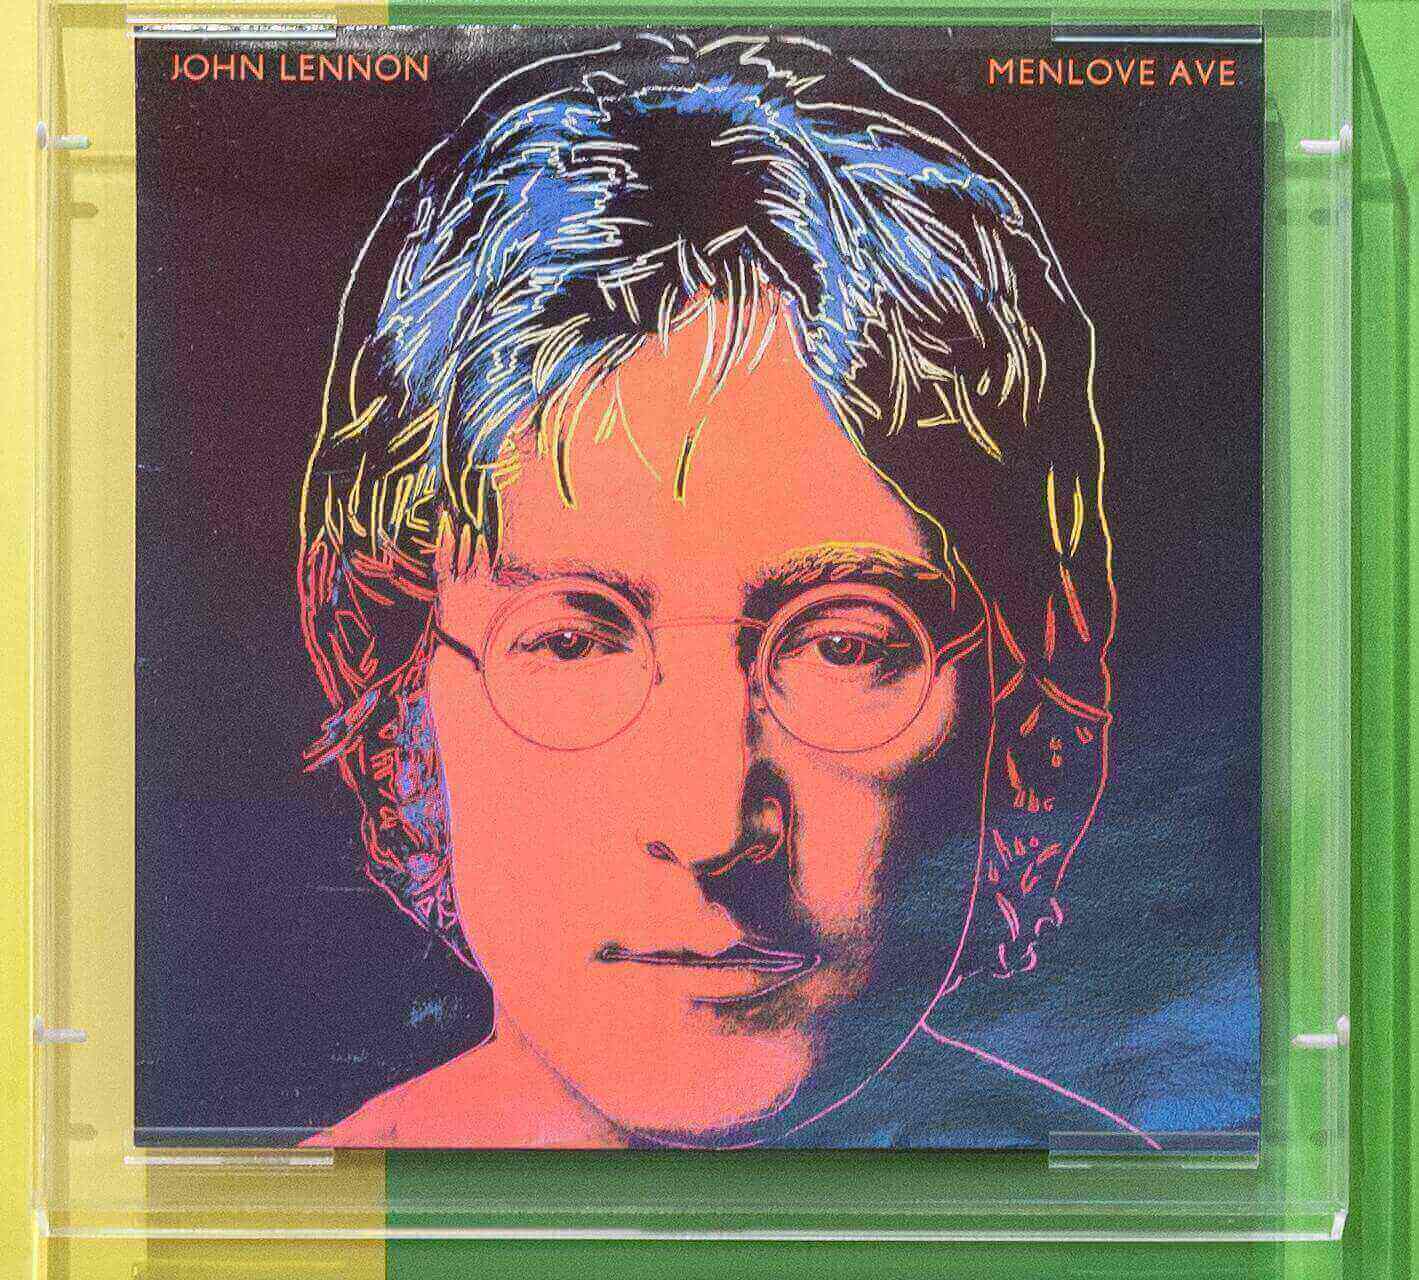 The cover of John Lennon's album 'Menlove Ave.'